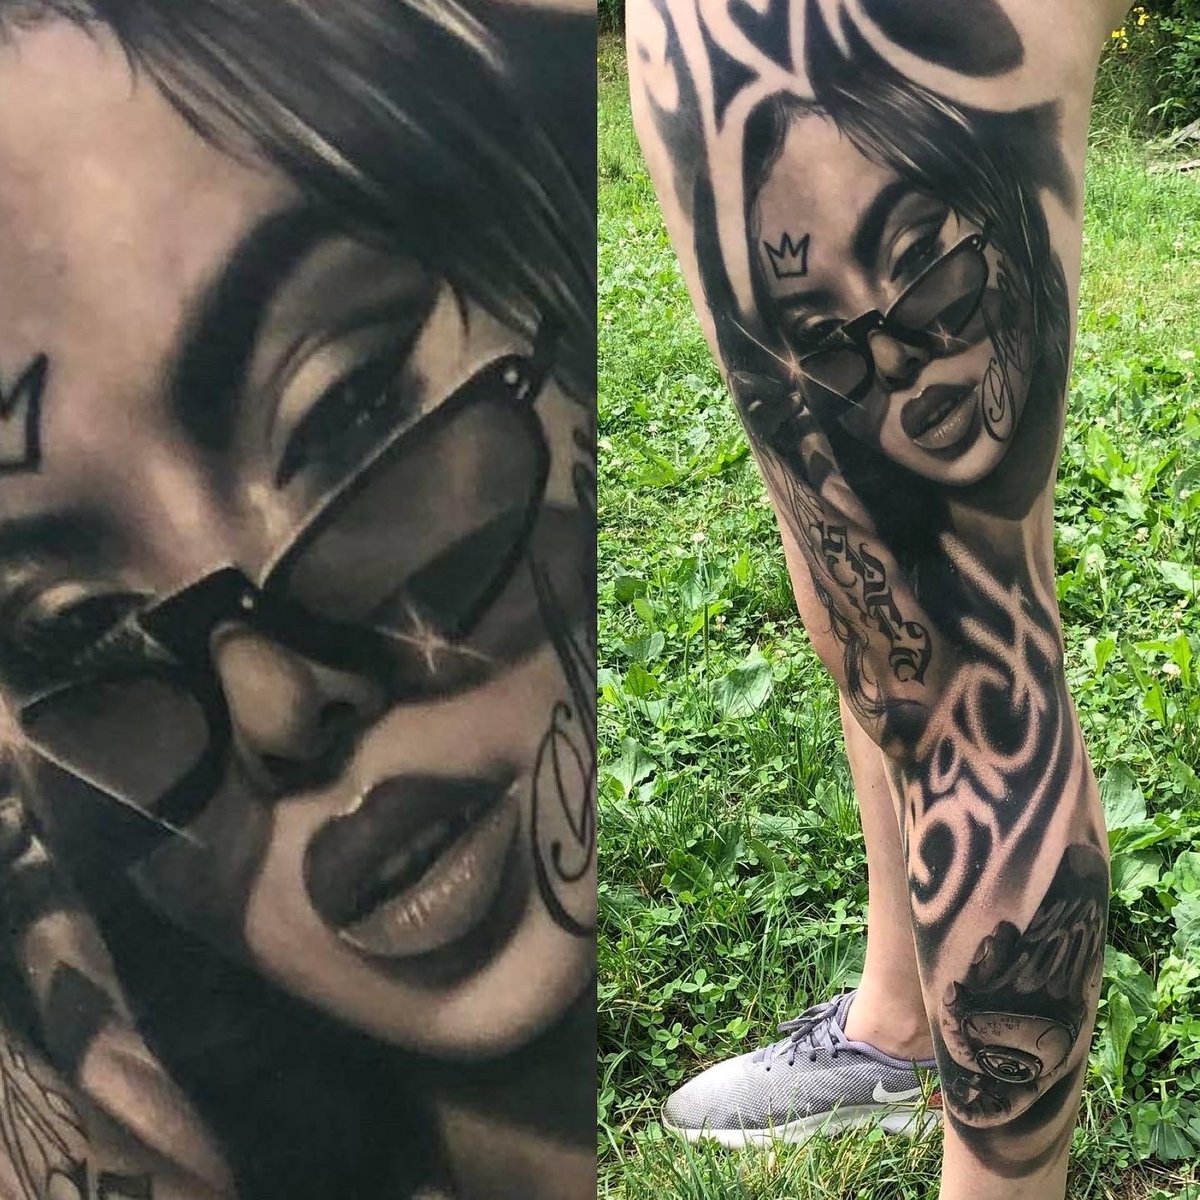 Igor Lubetzky-tatuaż-gangstagirl-tattoofest-Realizm